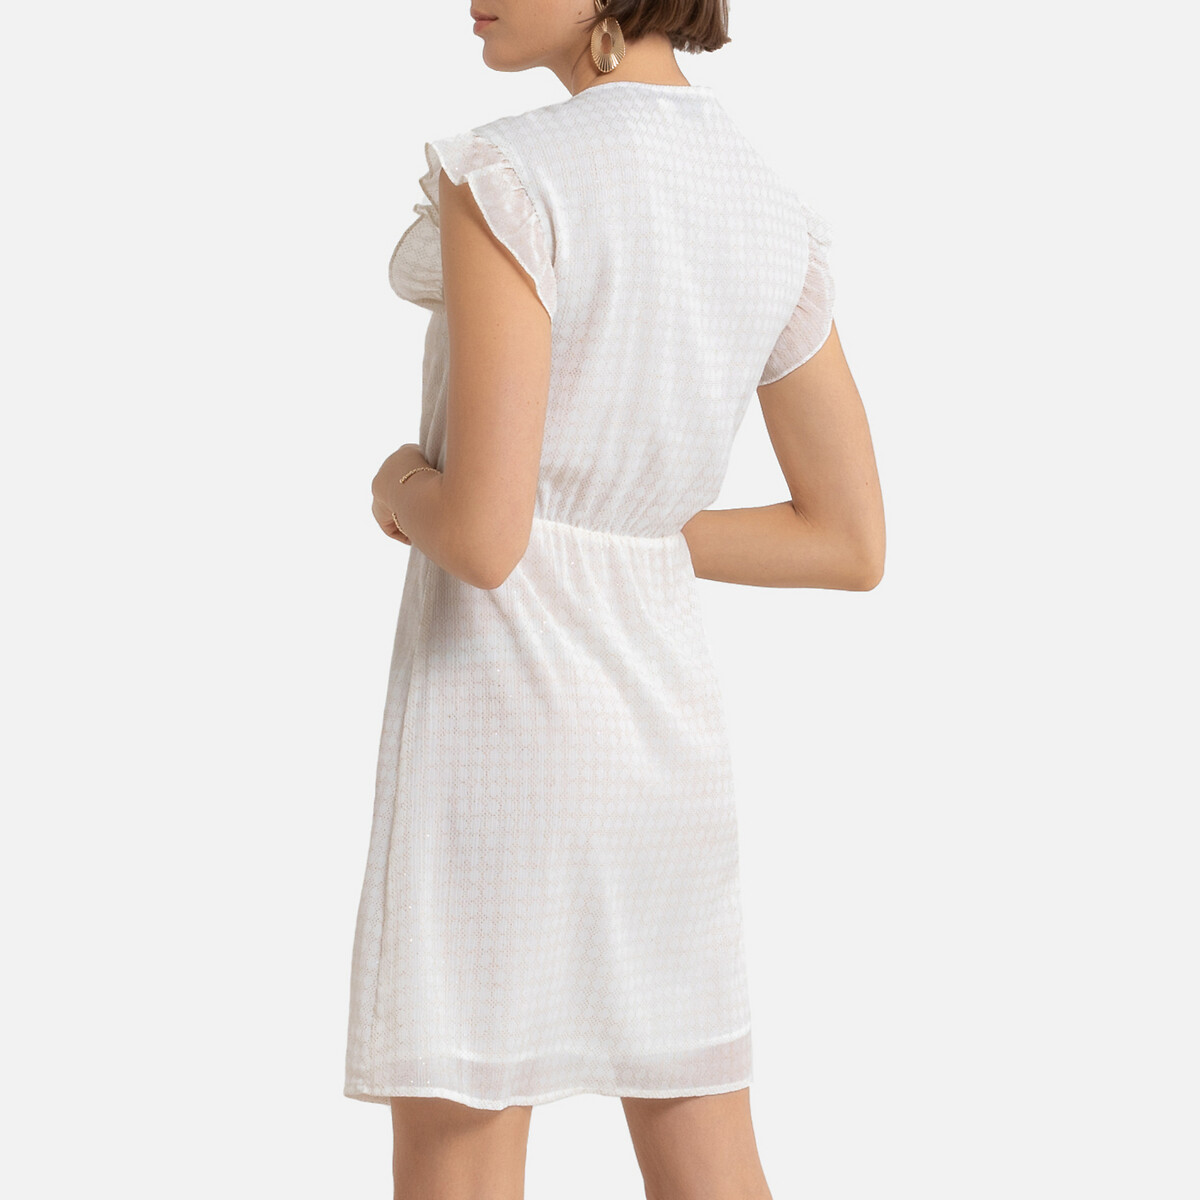 Платье LaRedoute Короткое V-образный вырез короткие рукава 0(XS) белый, размер 0(XS) Короткое V-образный вырез короткие рукава 0(XS) белый - фото 4